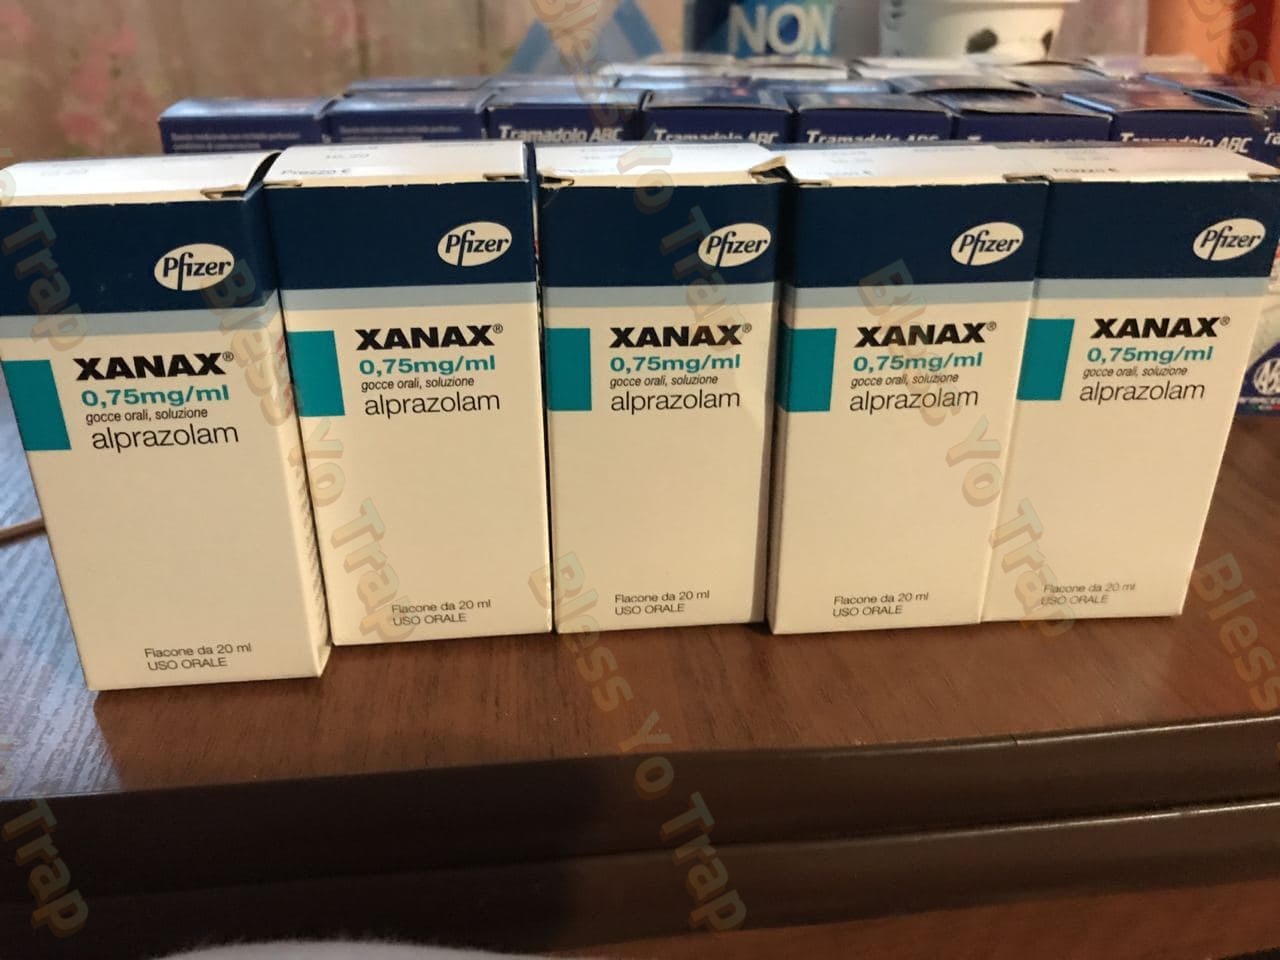 Xanax Pfizer 0,75mg ml.jpg